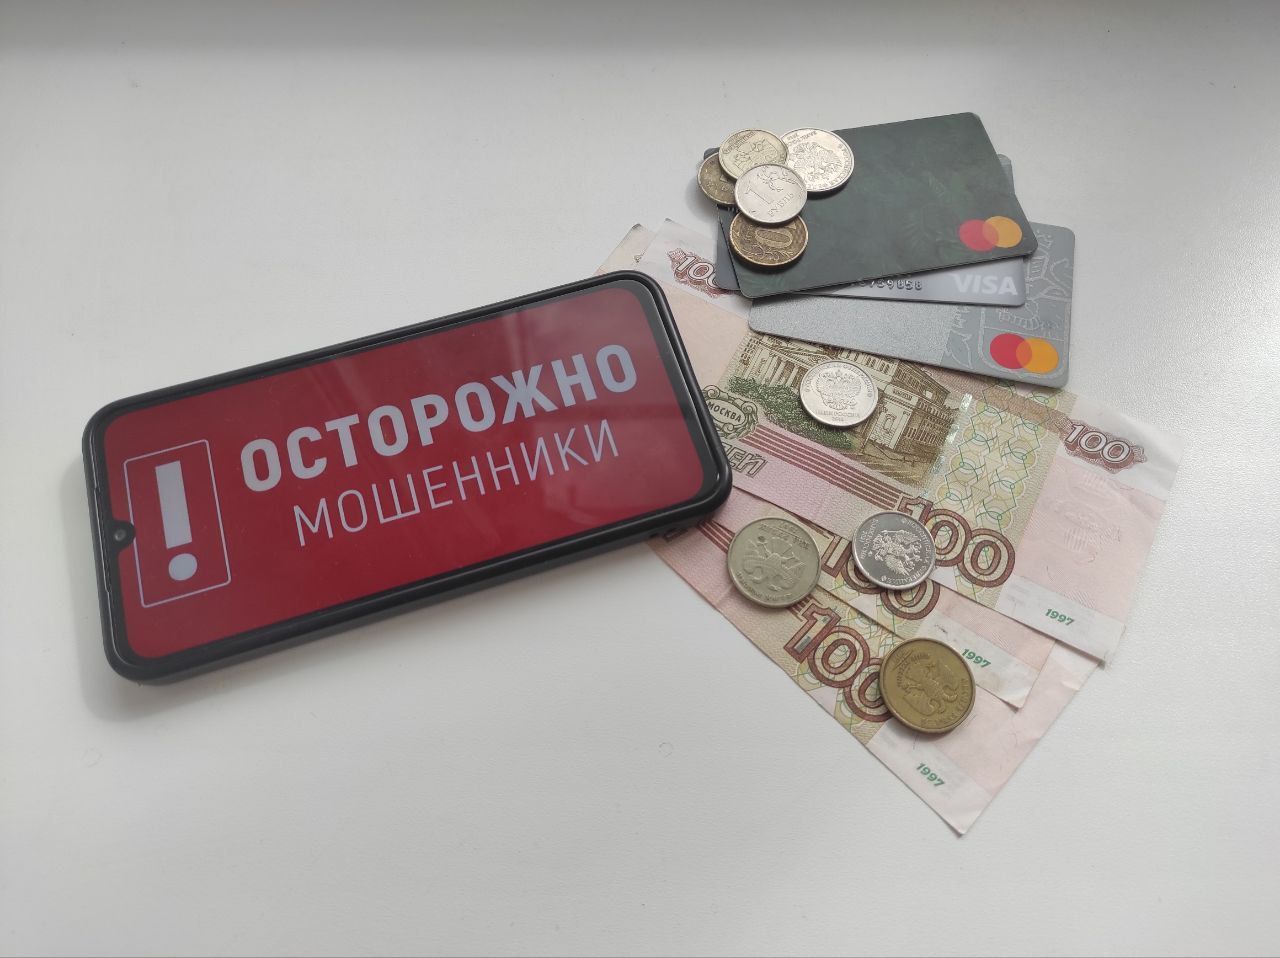 Сотрудник охраны отправил мошенникам больше 2 миллионов рублей